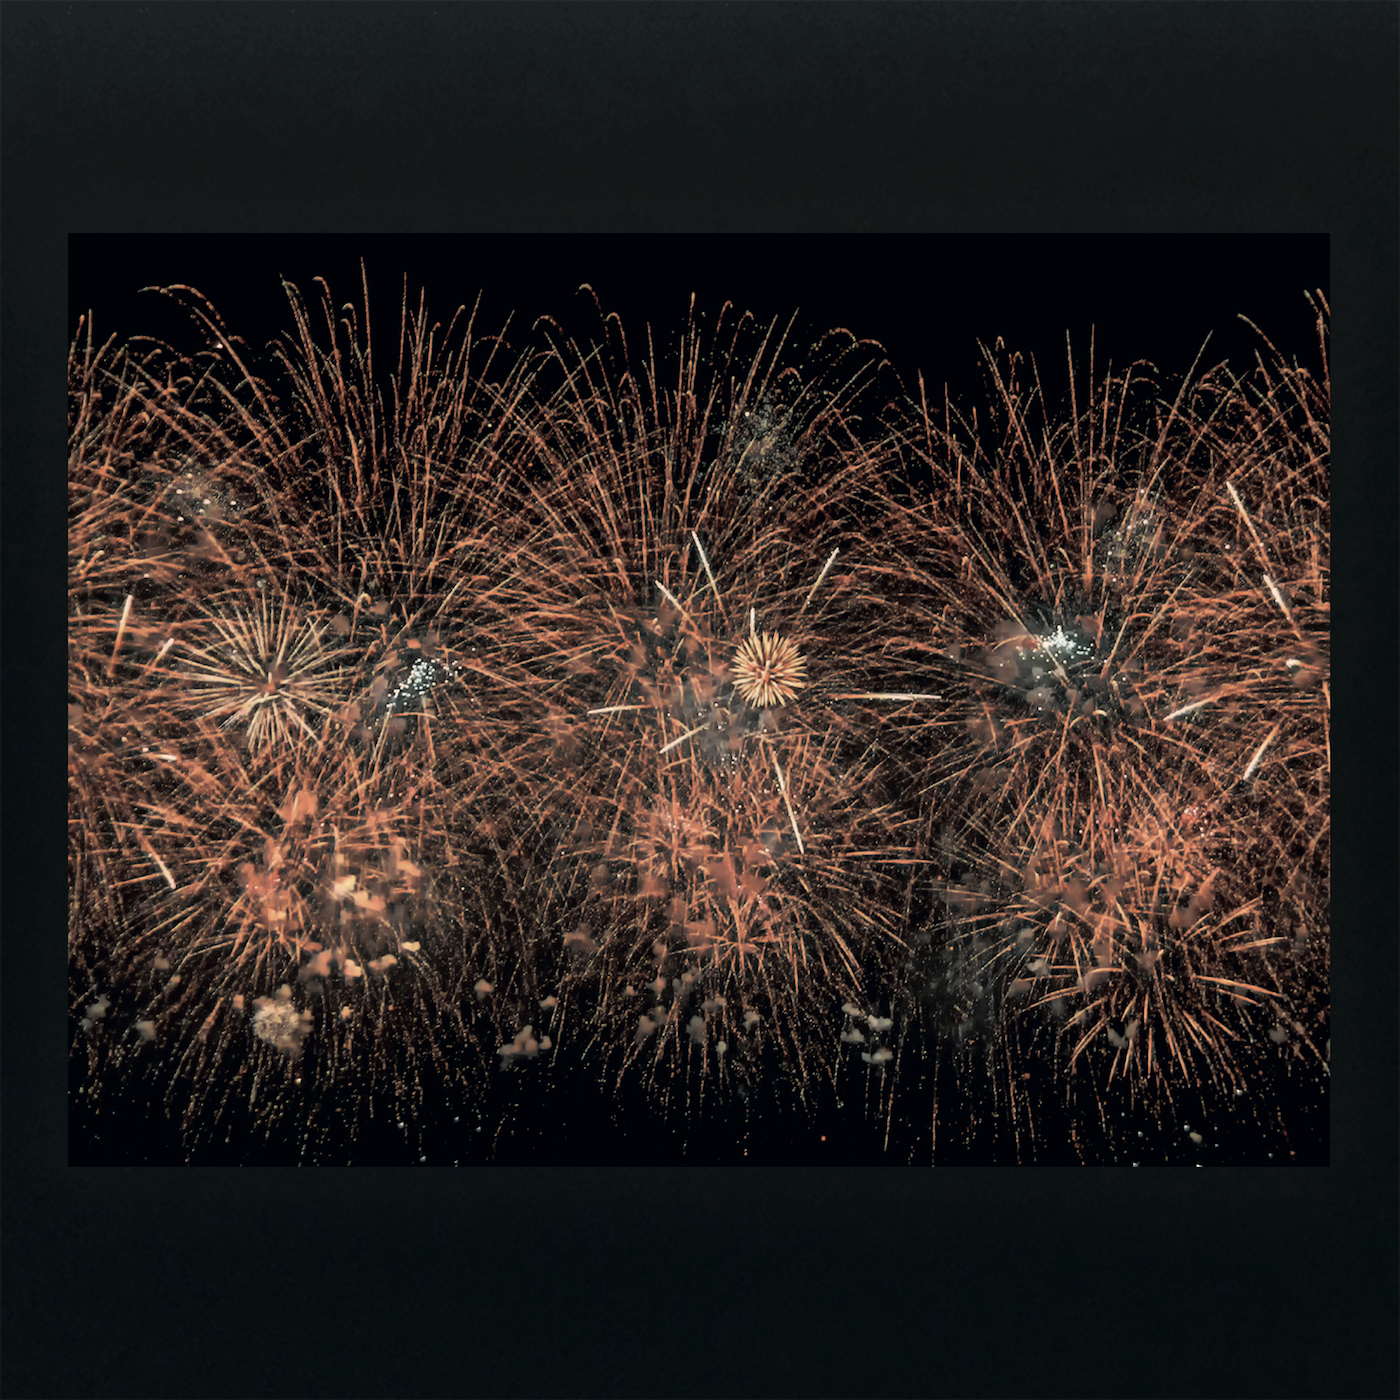 Sky full of golden Fireworks - Print on Dibond